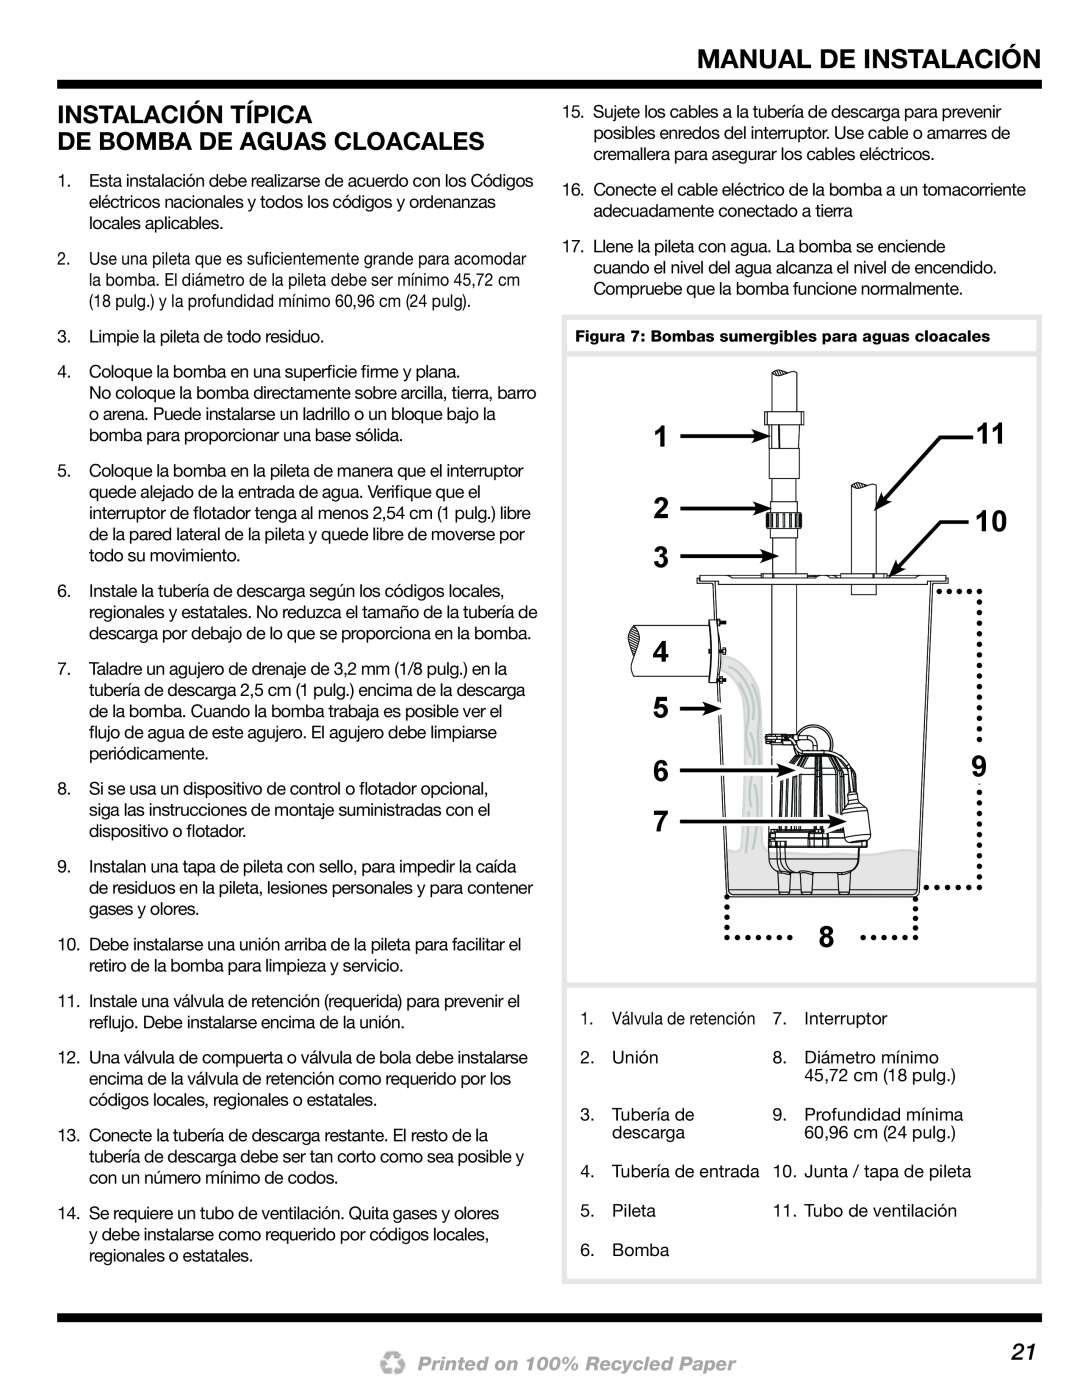 Wayne 200000-015 installation manual Instalación Típica De Bomba De Aguas Cloacales 